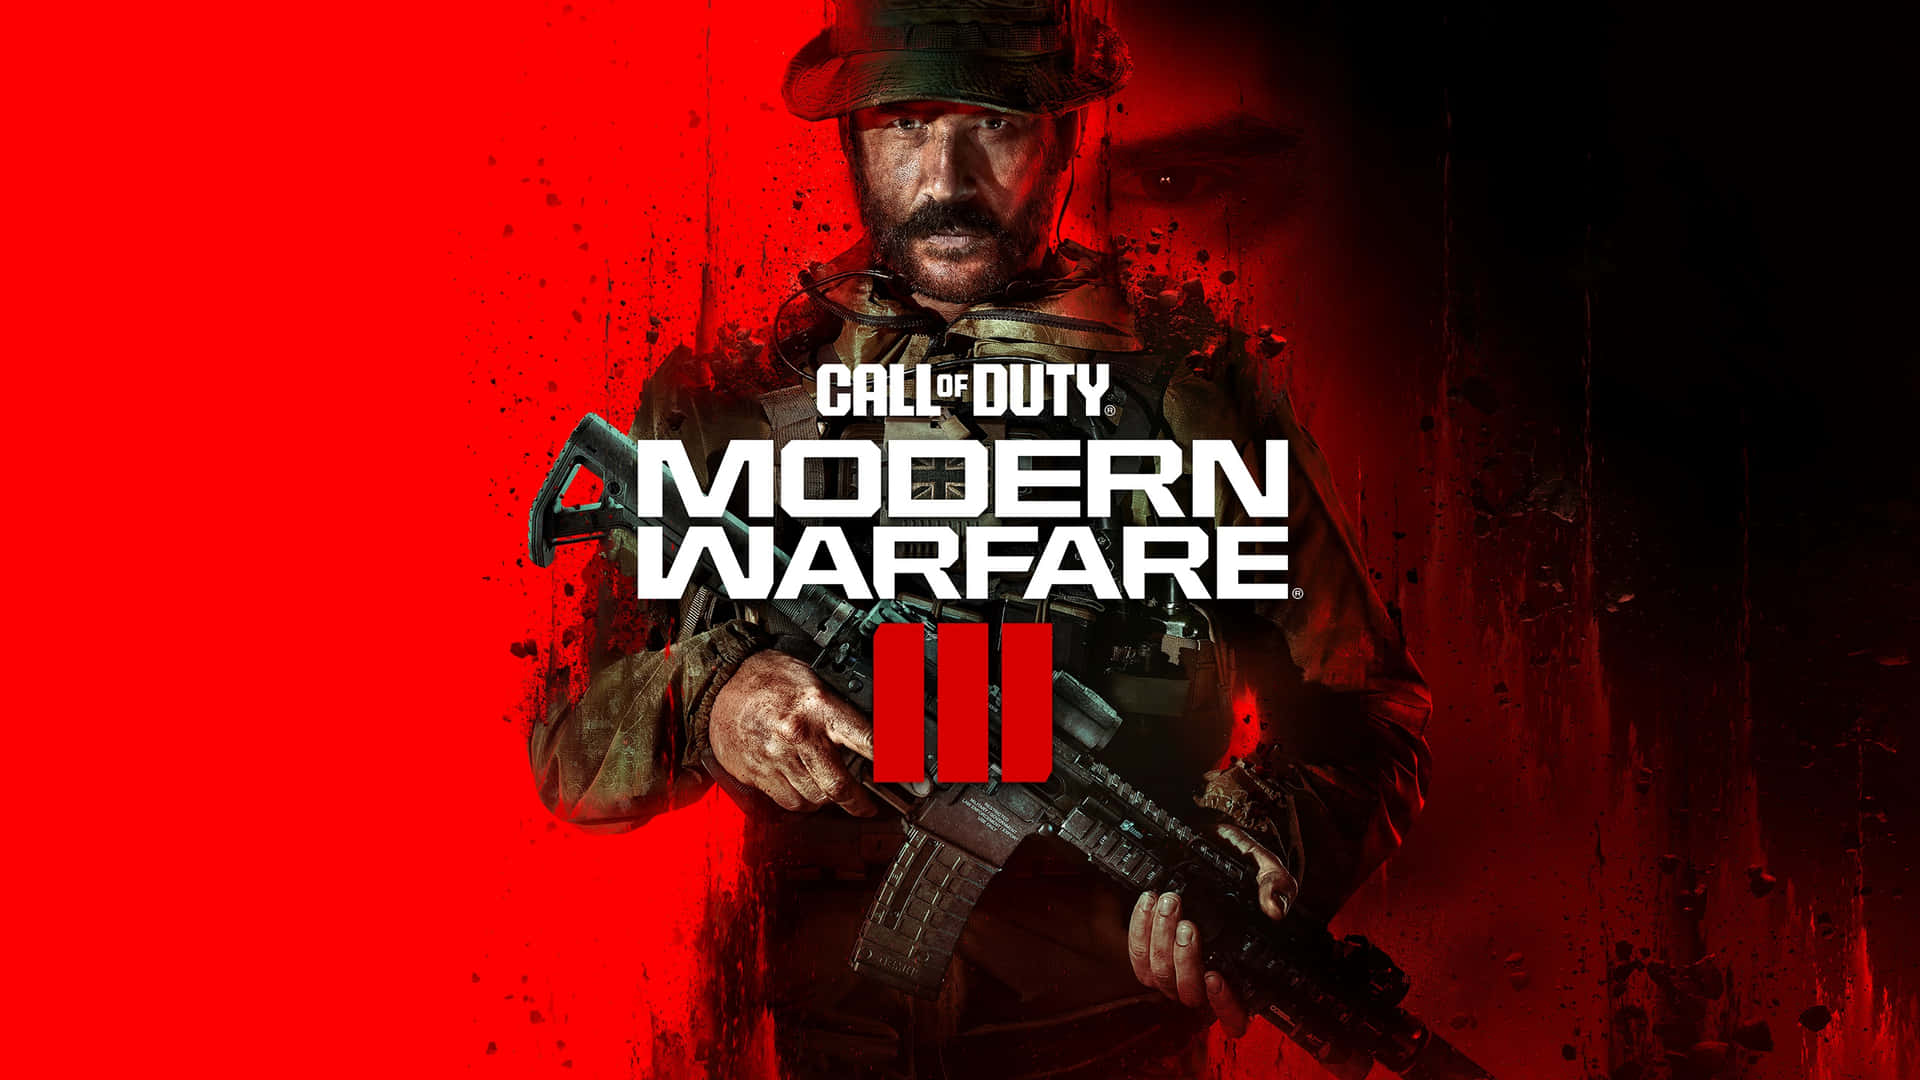 Callof Duty Modern Warfare3 Game Art Wallpaper